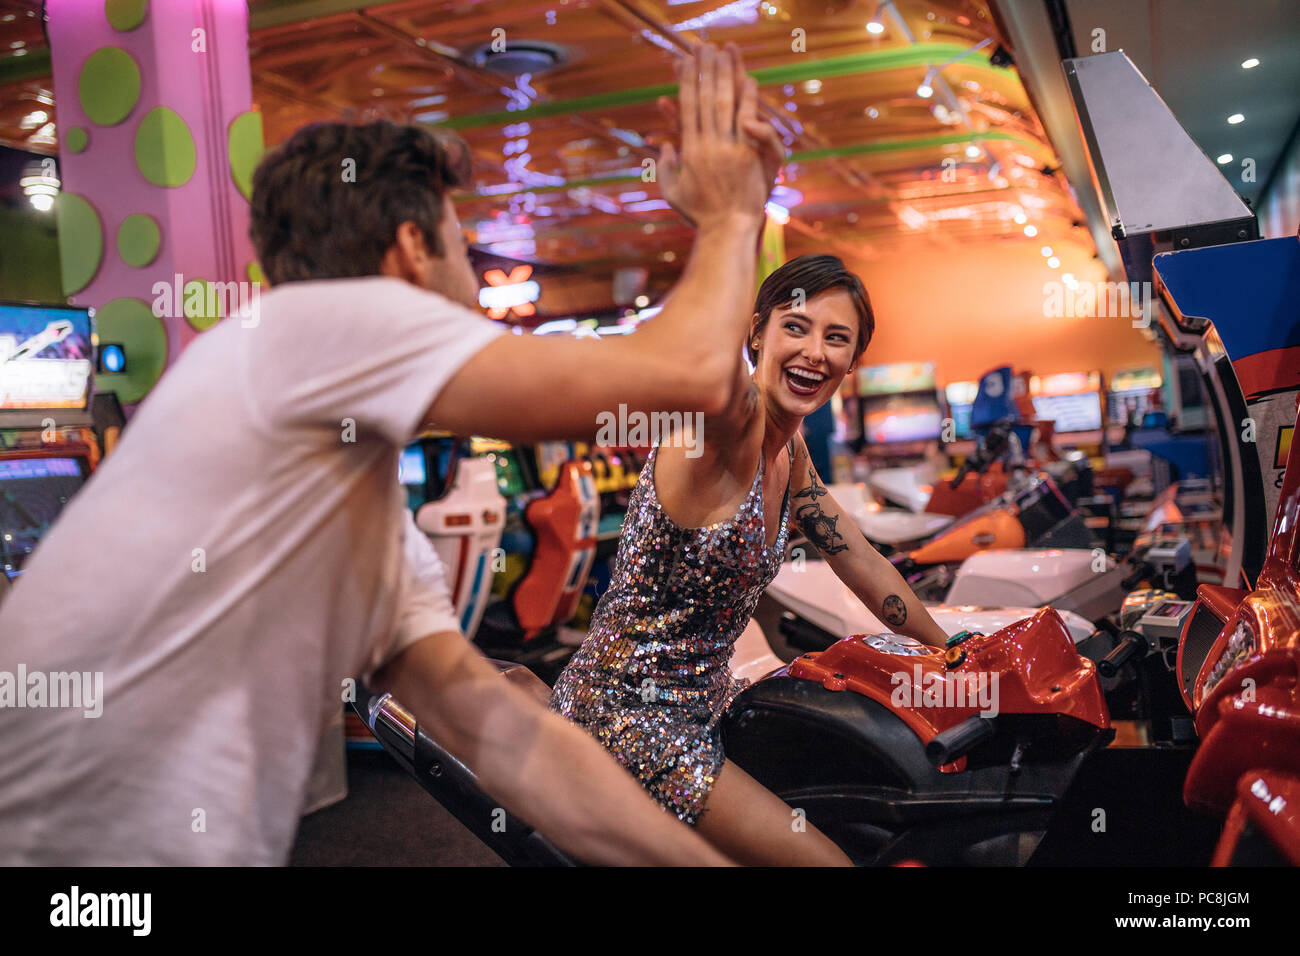 Die hohe fünf miteinander geben während des Spielens Bike Racing spiele Spiele Arcade. Paar beim Arcade racing Spiele bei einem Gaming Salon Stockfoto